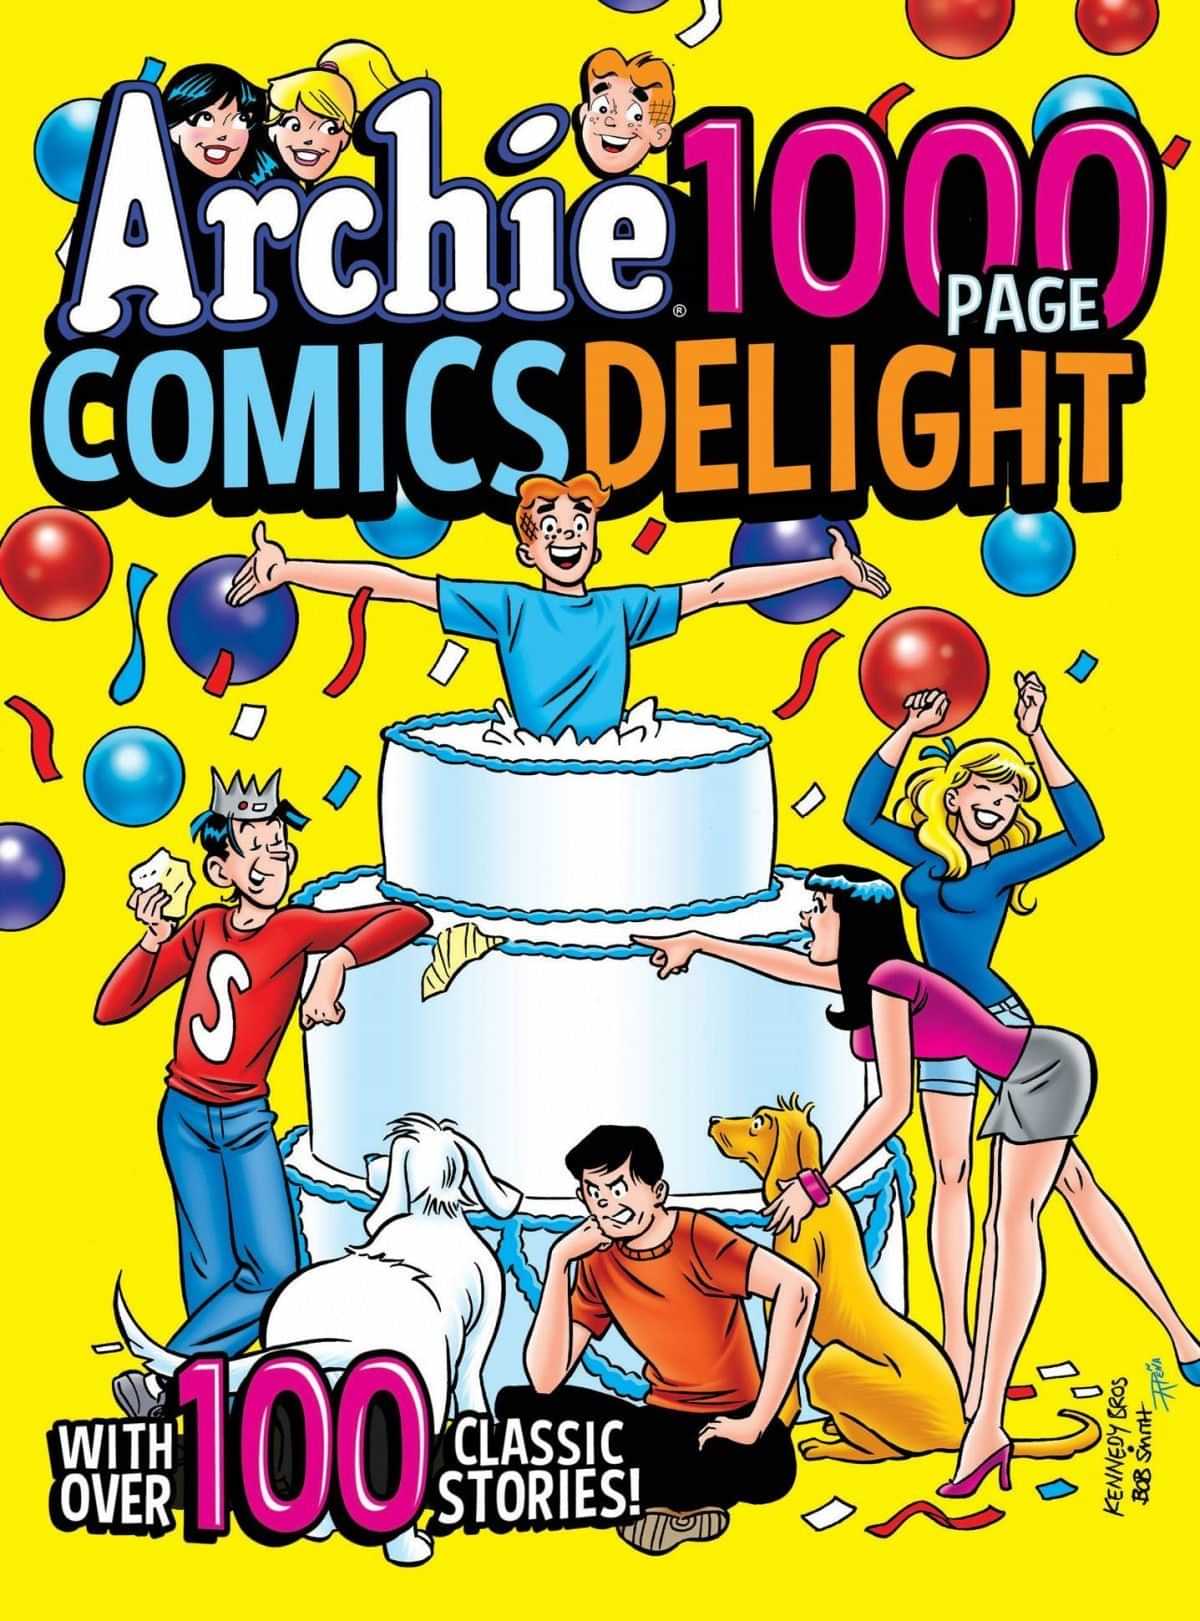 Archie Tp 1000 Page Comics Delight Archie Comics Publications Zeus Comics